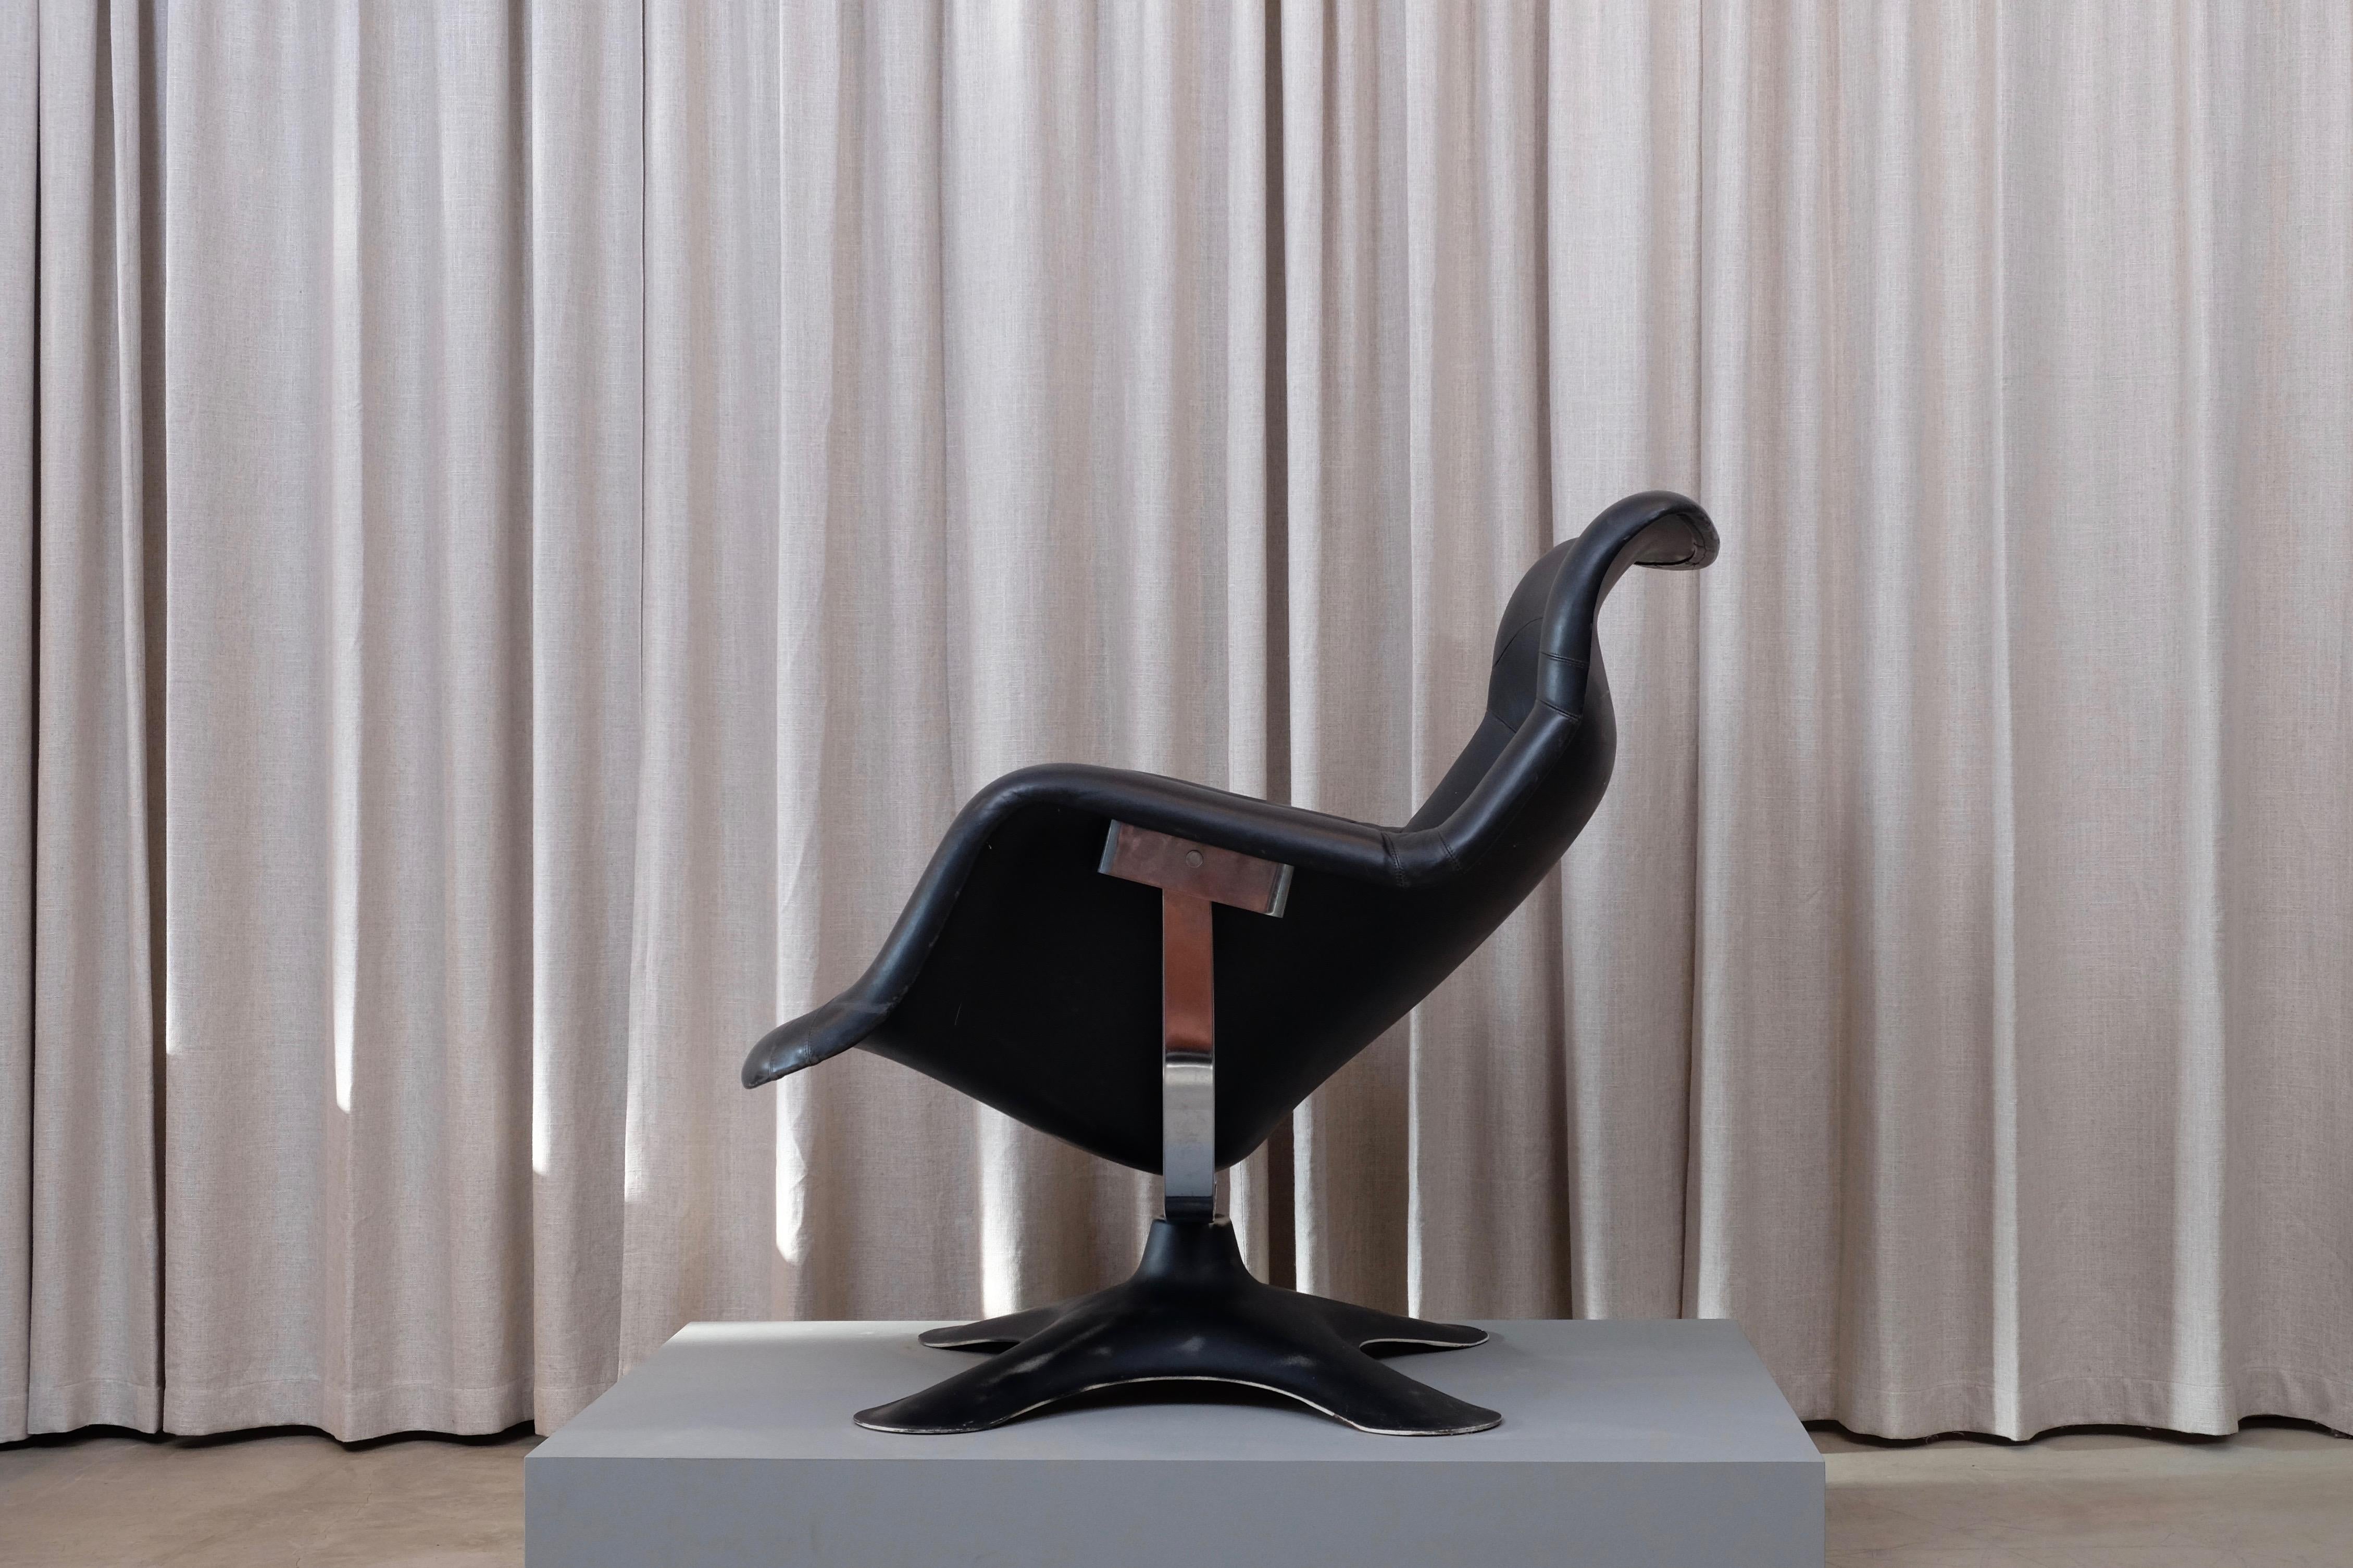 Sehr gesuchter Karuselli Lounge Chair in schwarz, entworfen 1965 von Yrjö Kukkapuro, hergestellt von Haimi, Finnland, mit Sitzschale und Fußkreuz aus Fiberglas. Exklusiv gefertigte Lederpolsterung, Chrom und Glasfaser in sehr gutem Zustand. Der wohl